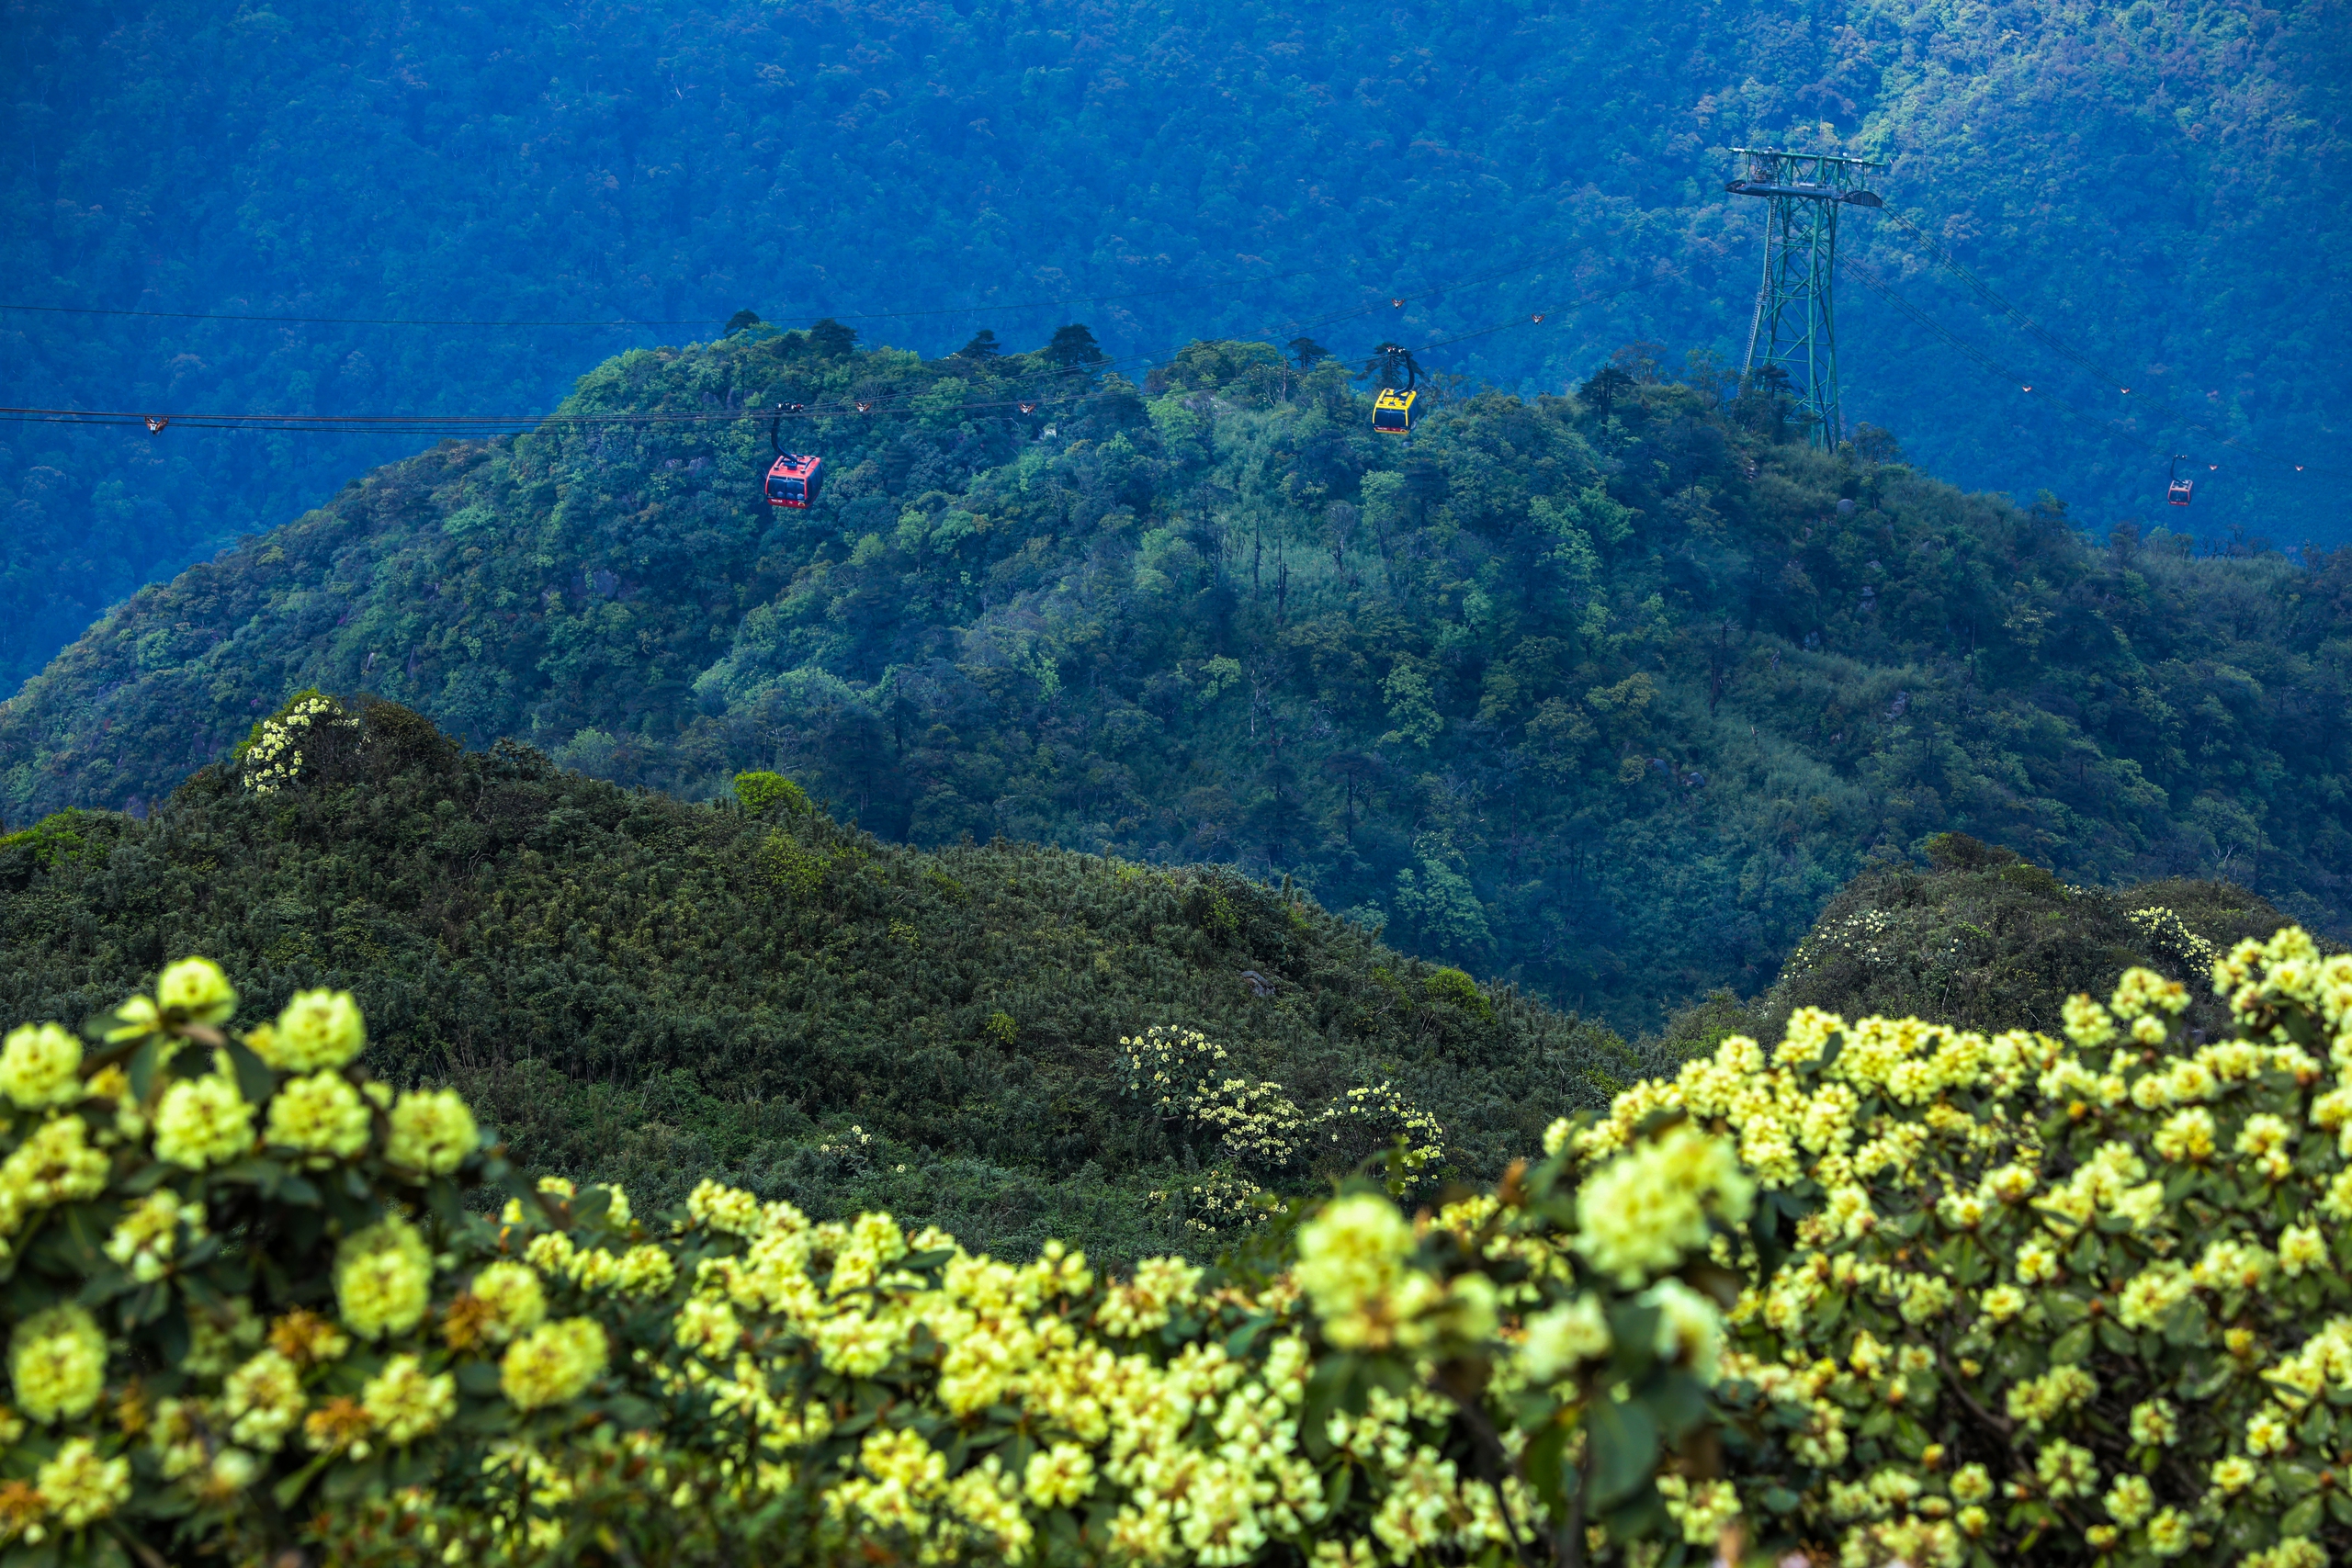 Từ độ cao 2.000m của cabin cáp treo, du khách sẽ có cơ hội chiêm ngưỡng những thảm hoa vàng và đỏ rực rỡ, tạo ra một bức tranh thiên nhiên đầy mê hoặc giữa không gian rộng lớn của dãy núi Hoàng Liên